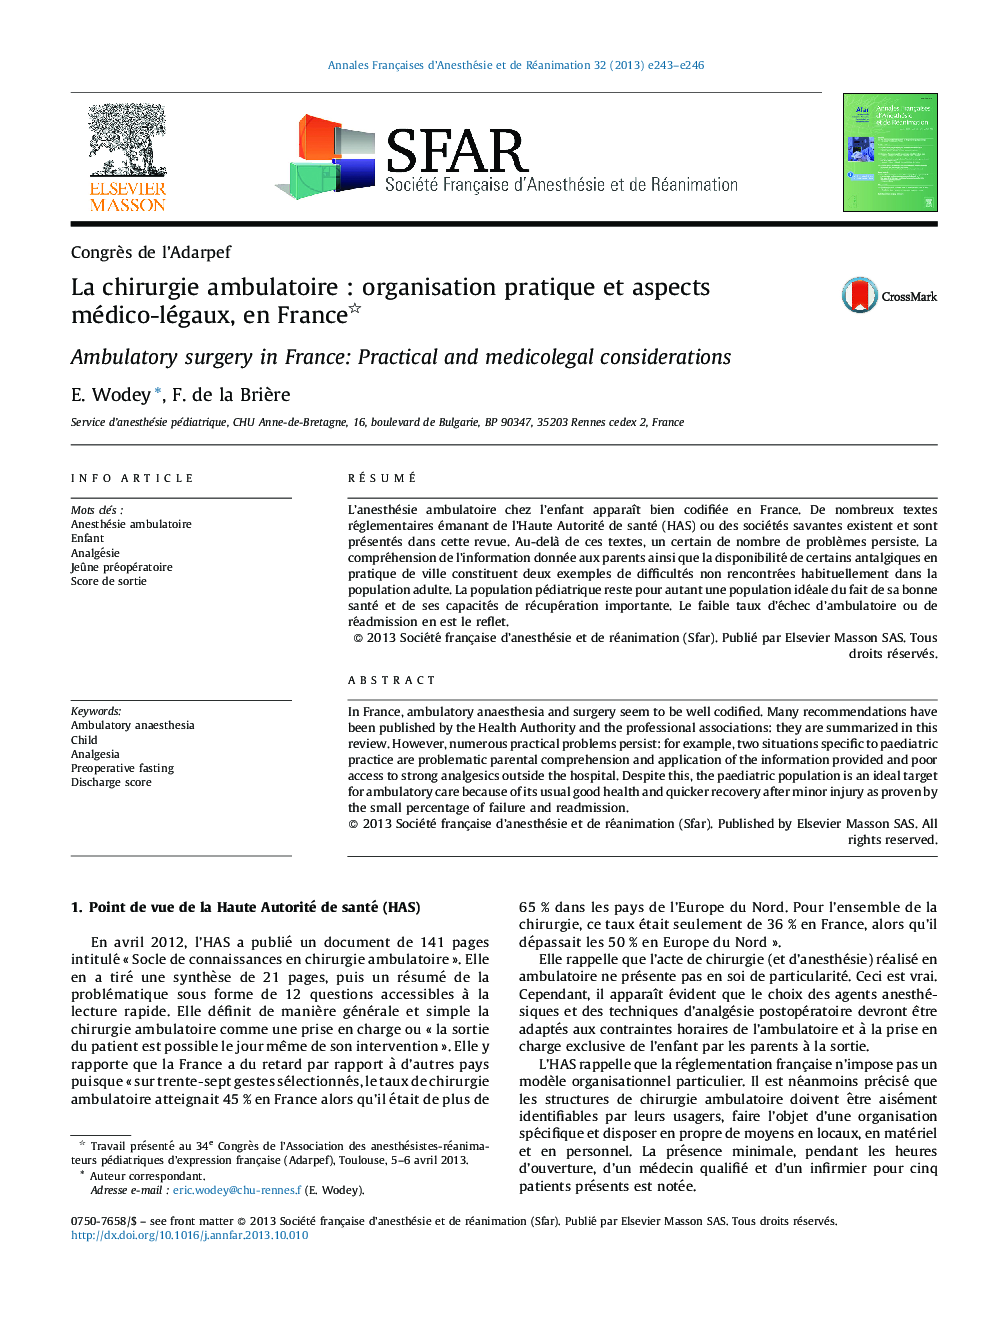 La chirurgie ambulatoire : organisation pratique et aspects médico-légaux, en France 